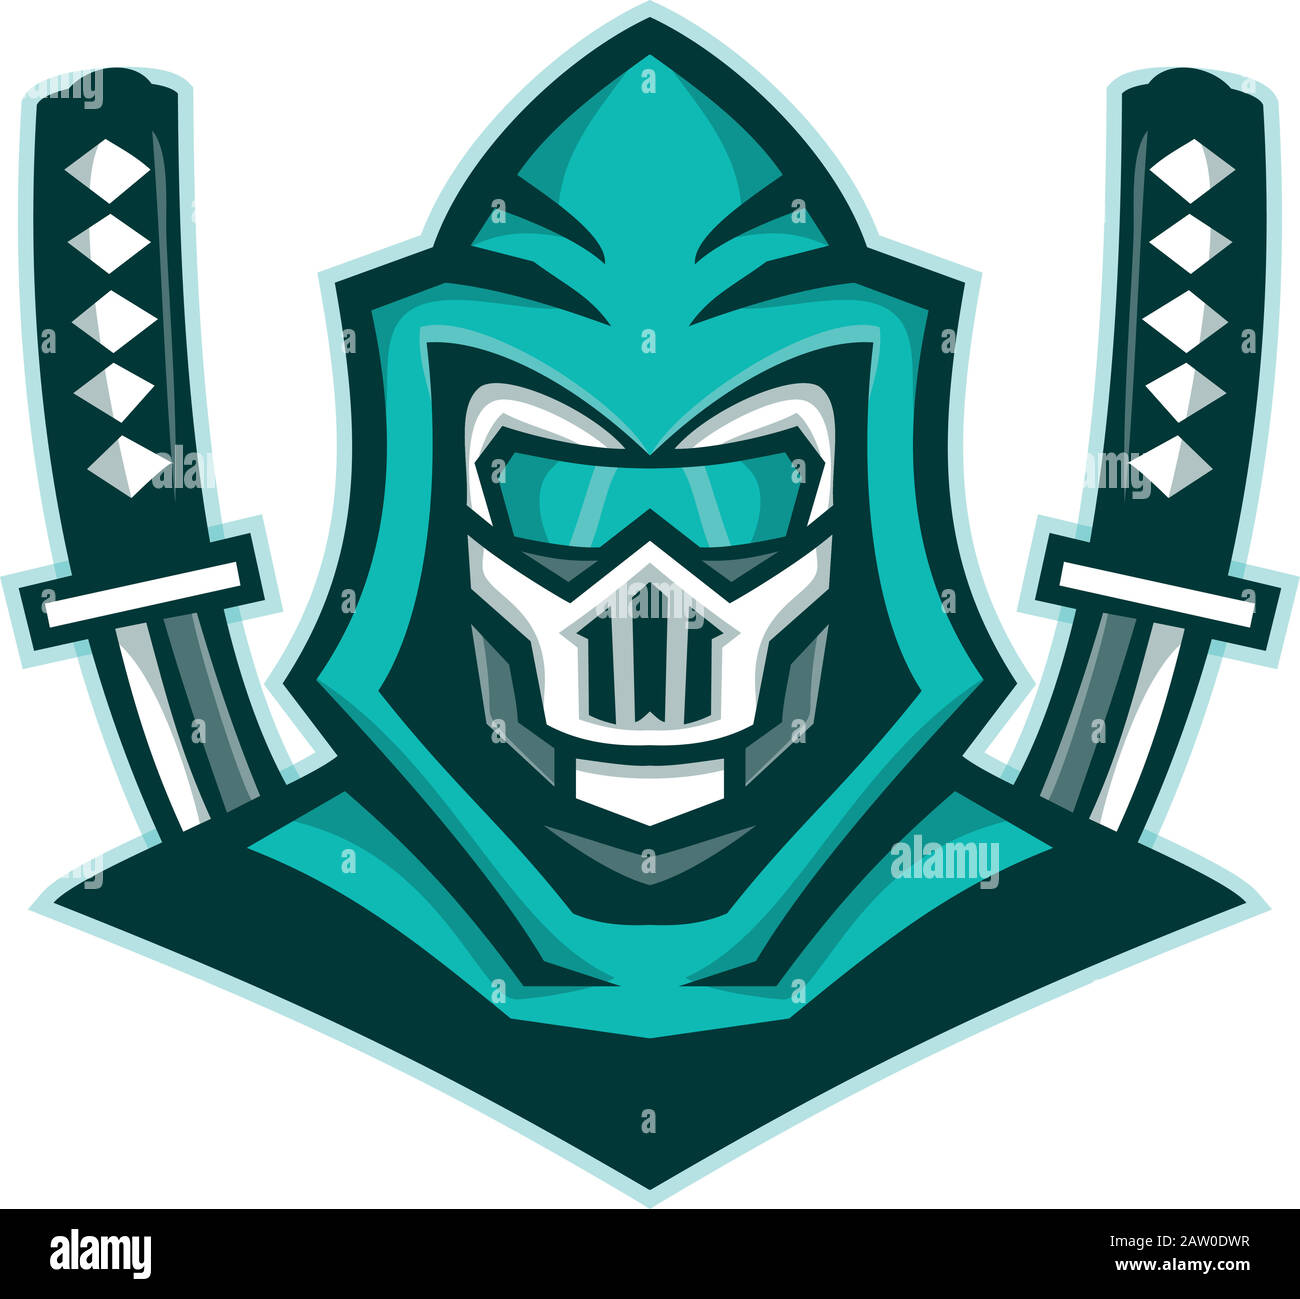 Icona Mascot immagine di testa di un cyborg ninja o organismo cibernetico, con la spada samurai visto di fronte su sfondo isolato in stile retrò. Illustrazione Vettoriale